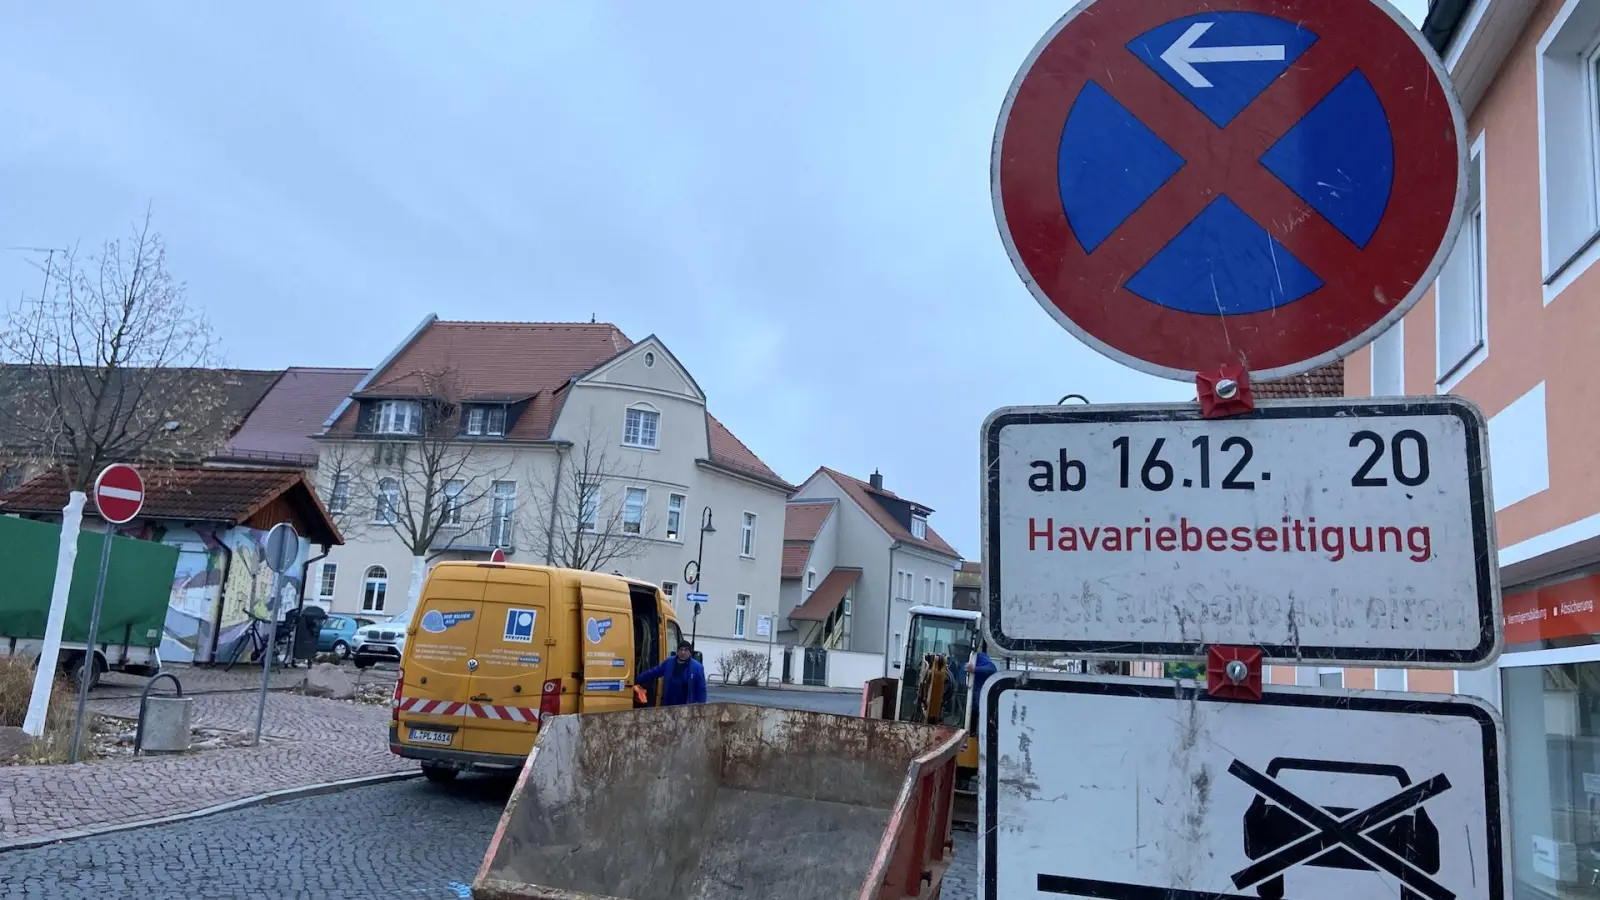 Havariebeseitigung: Straße am Markt in Taucha gesperrt (Foto: taucha-kompakt.de)